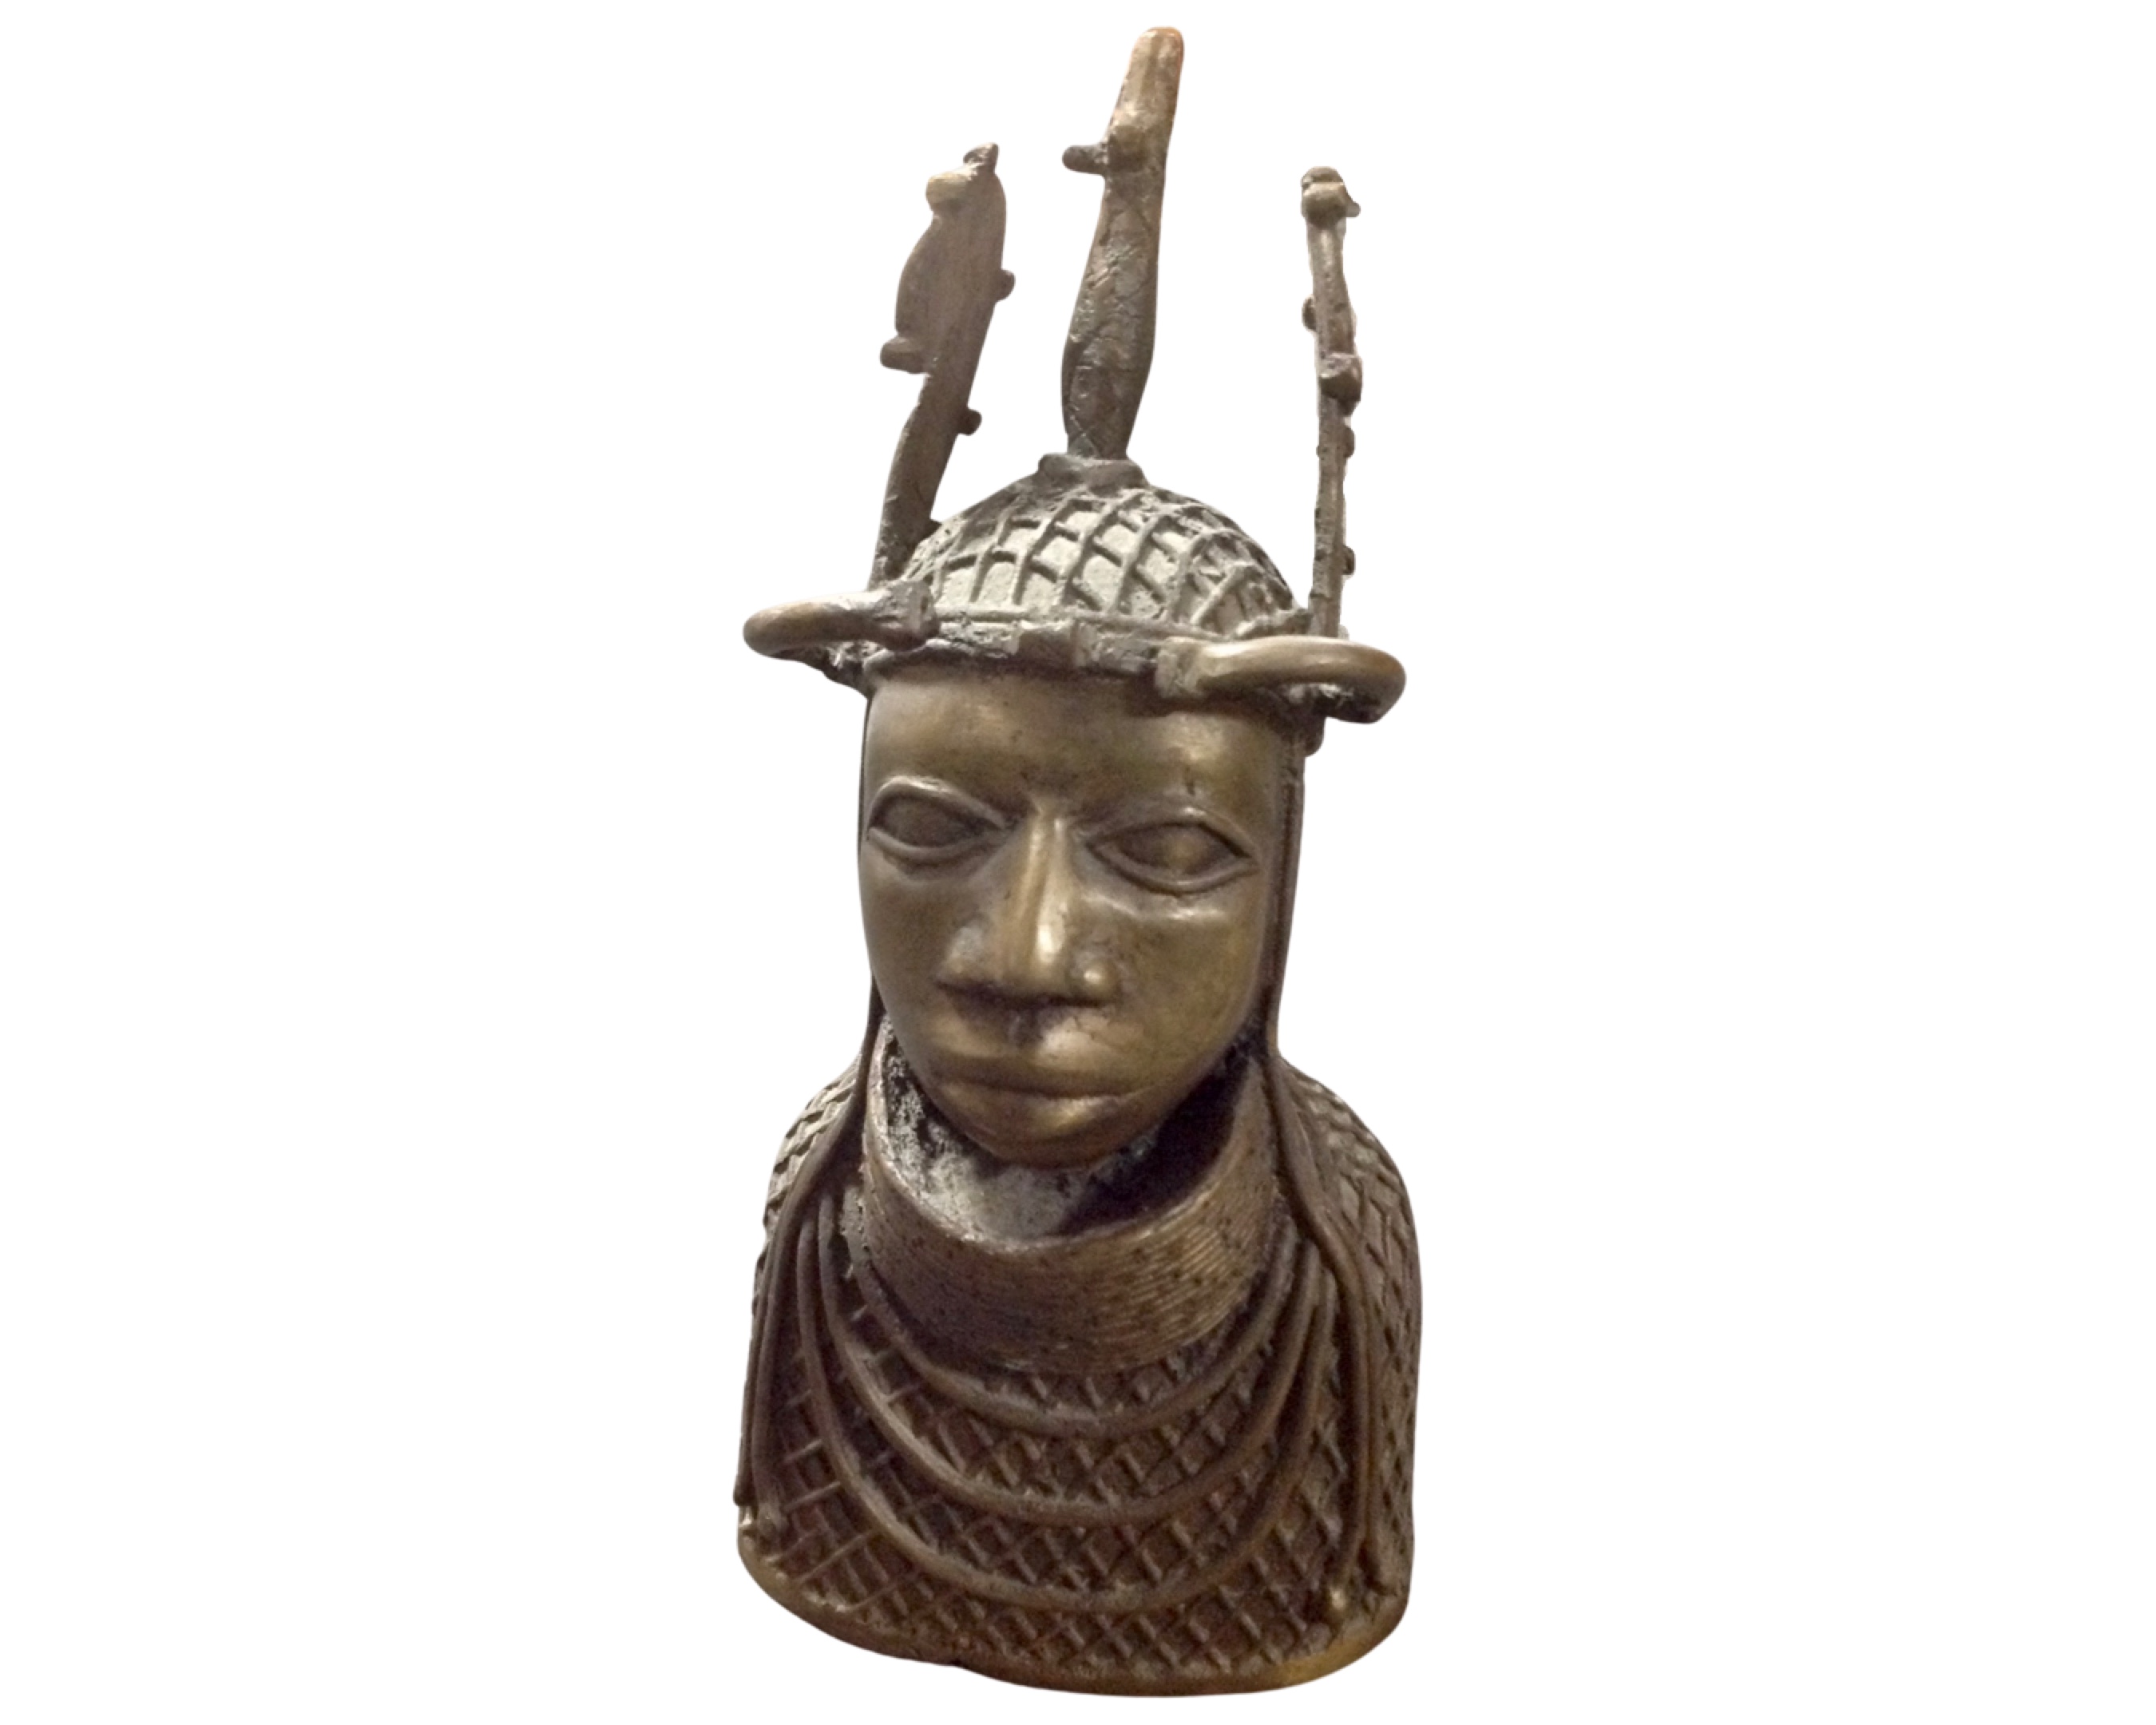 A West African Benin bronze tribal bust.